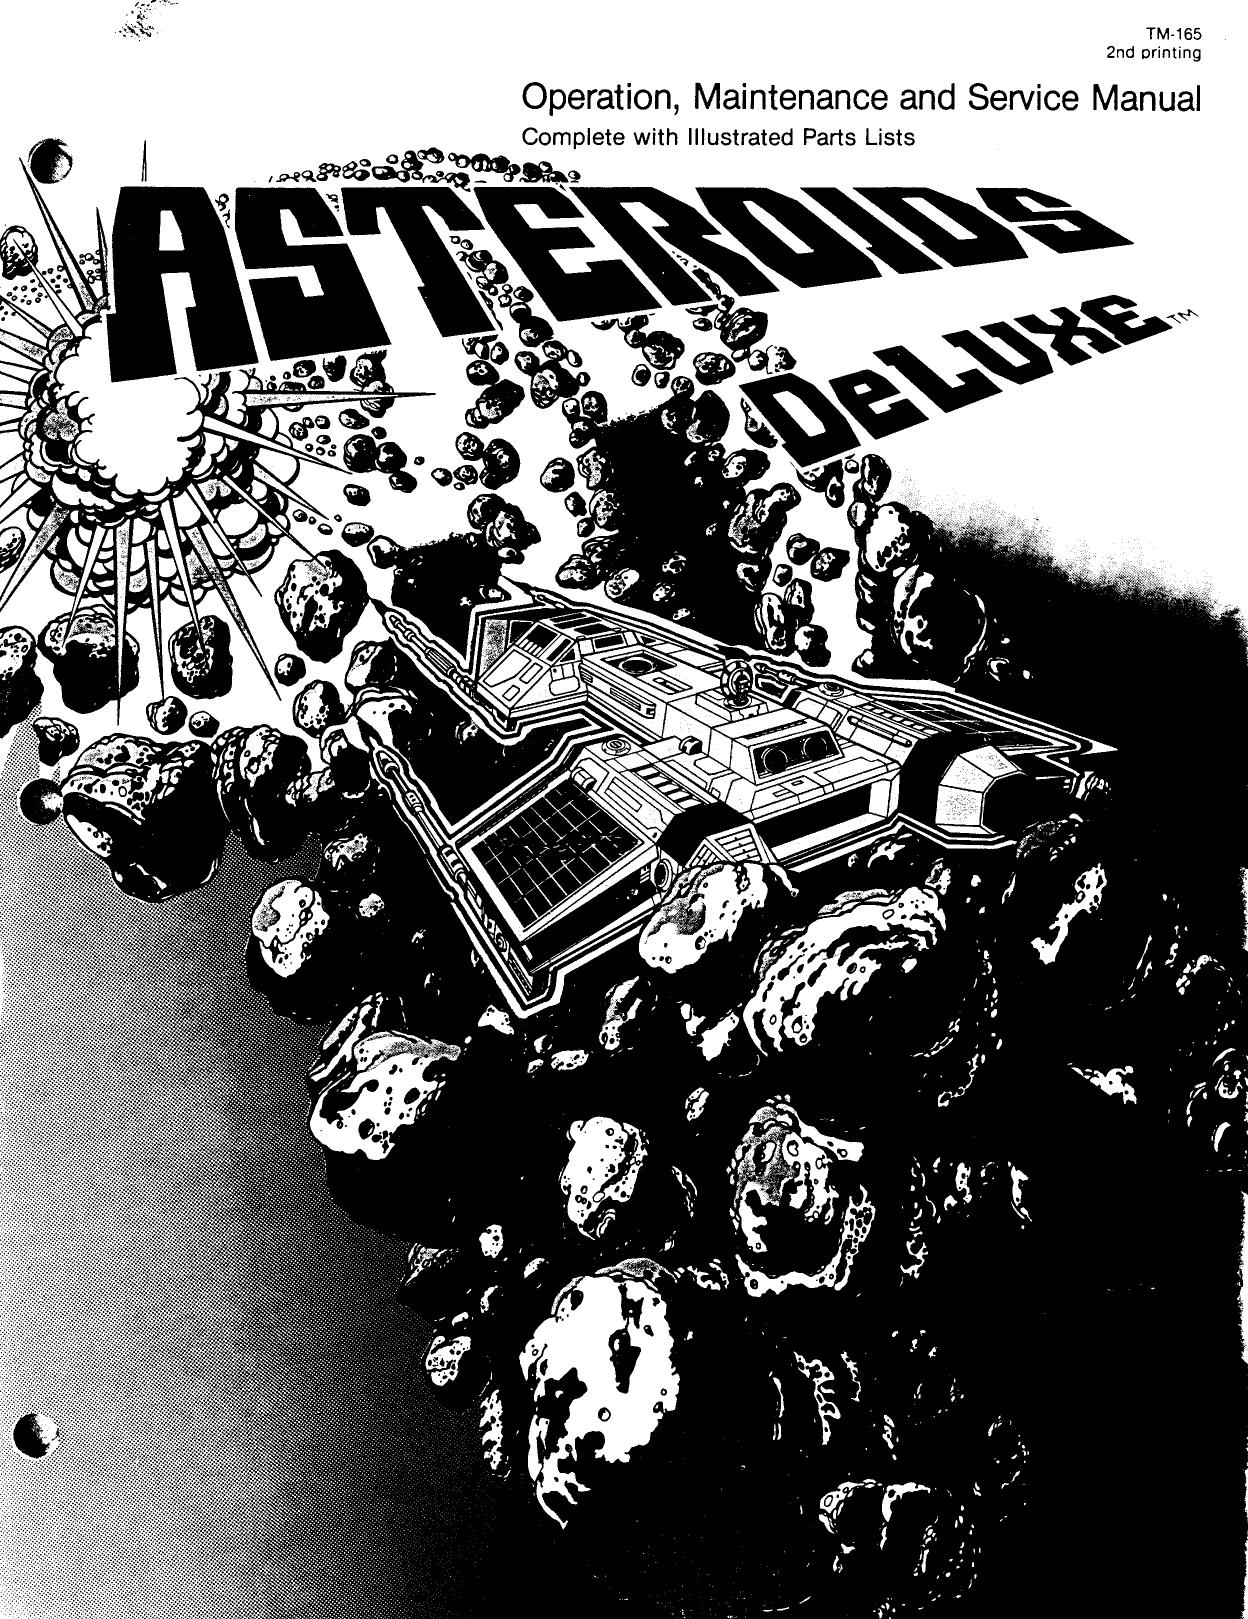 Asteroids Deluxe (TM-165 2nd Printing) (Op-Maint-Serv-Parts) (U)